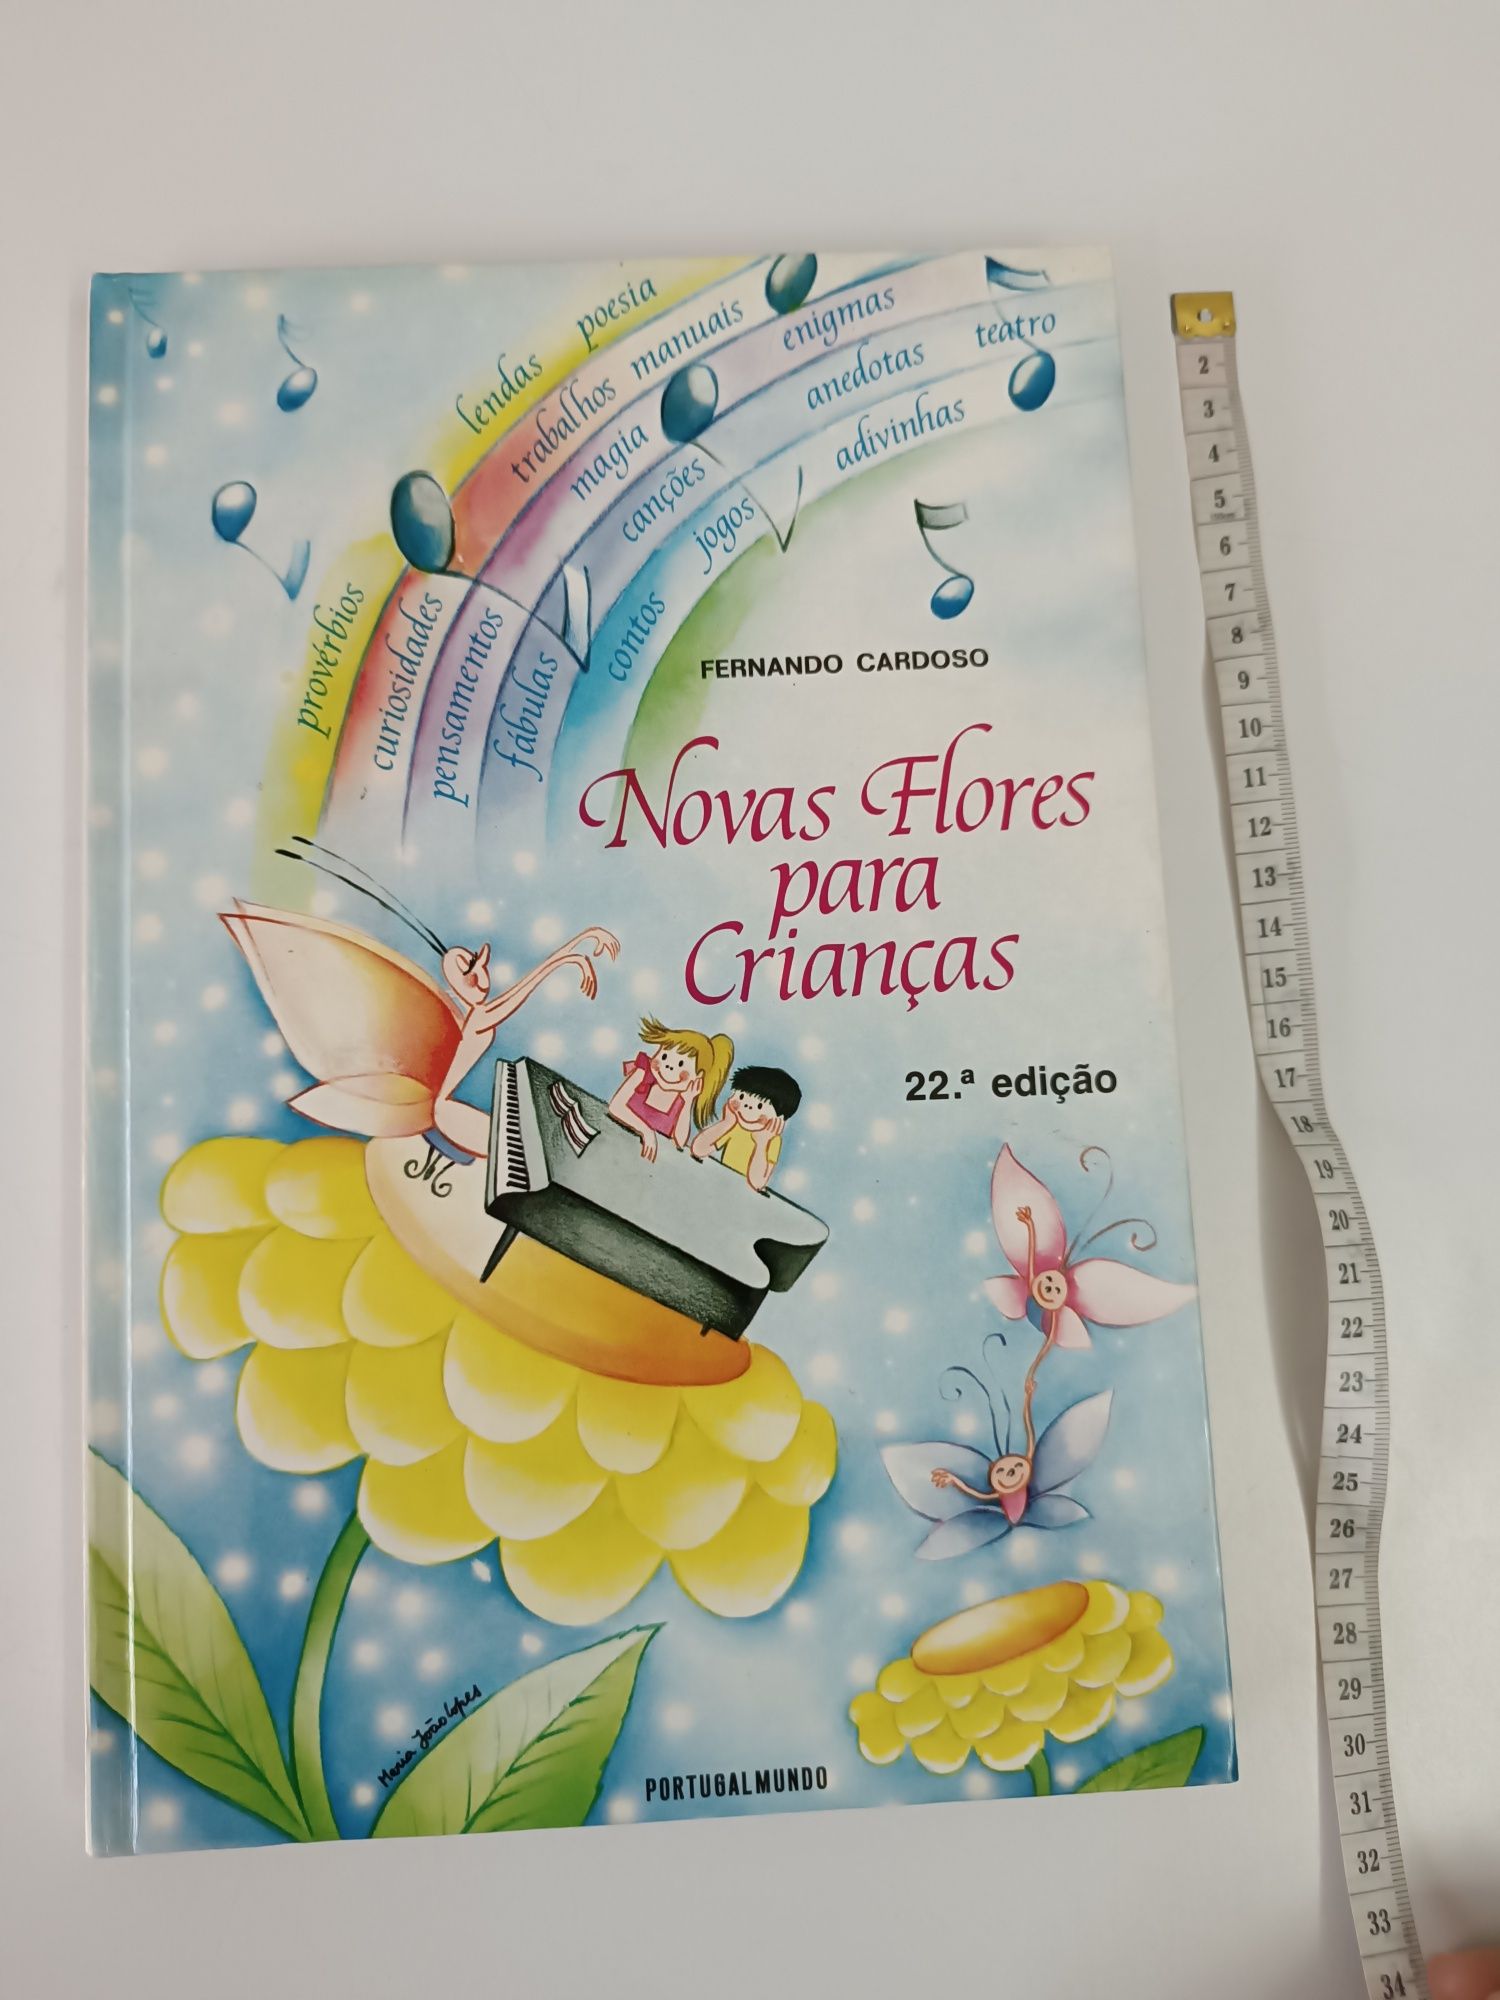 Livro "Novas flores para crianças" Fernando Cardoso